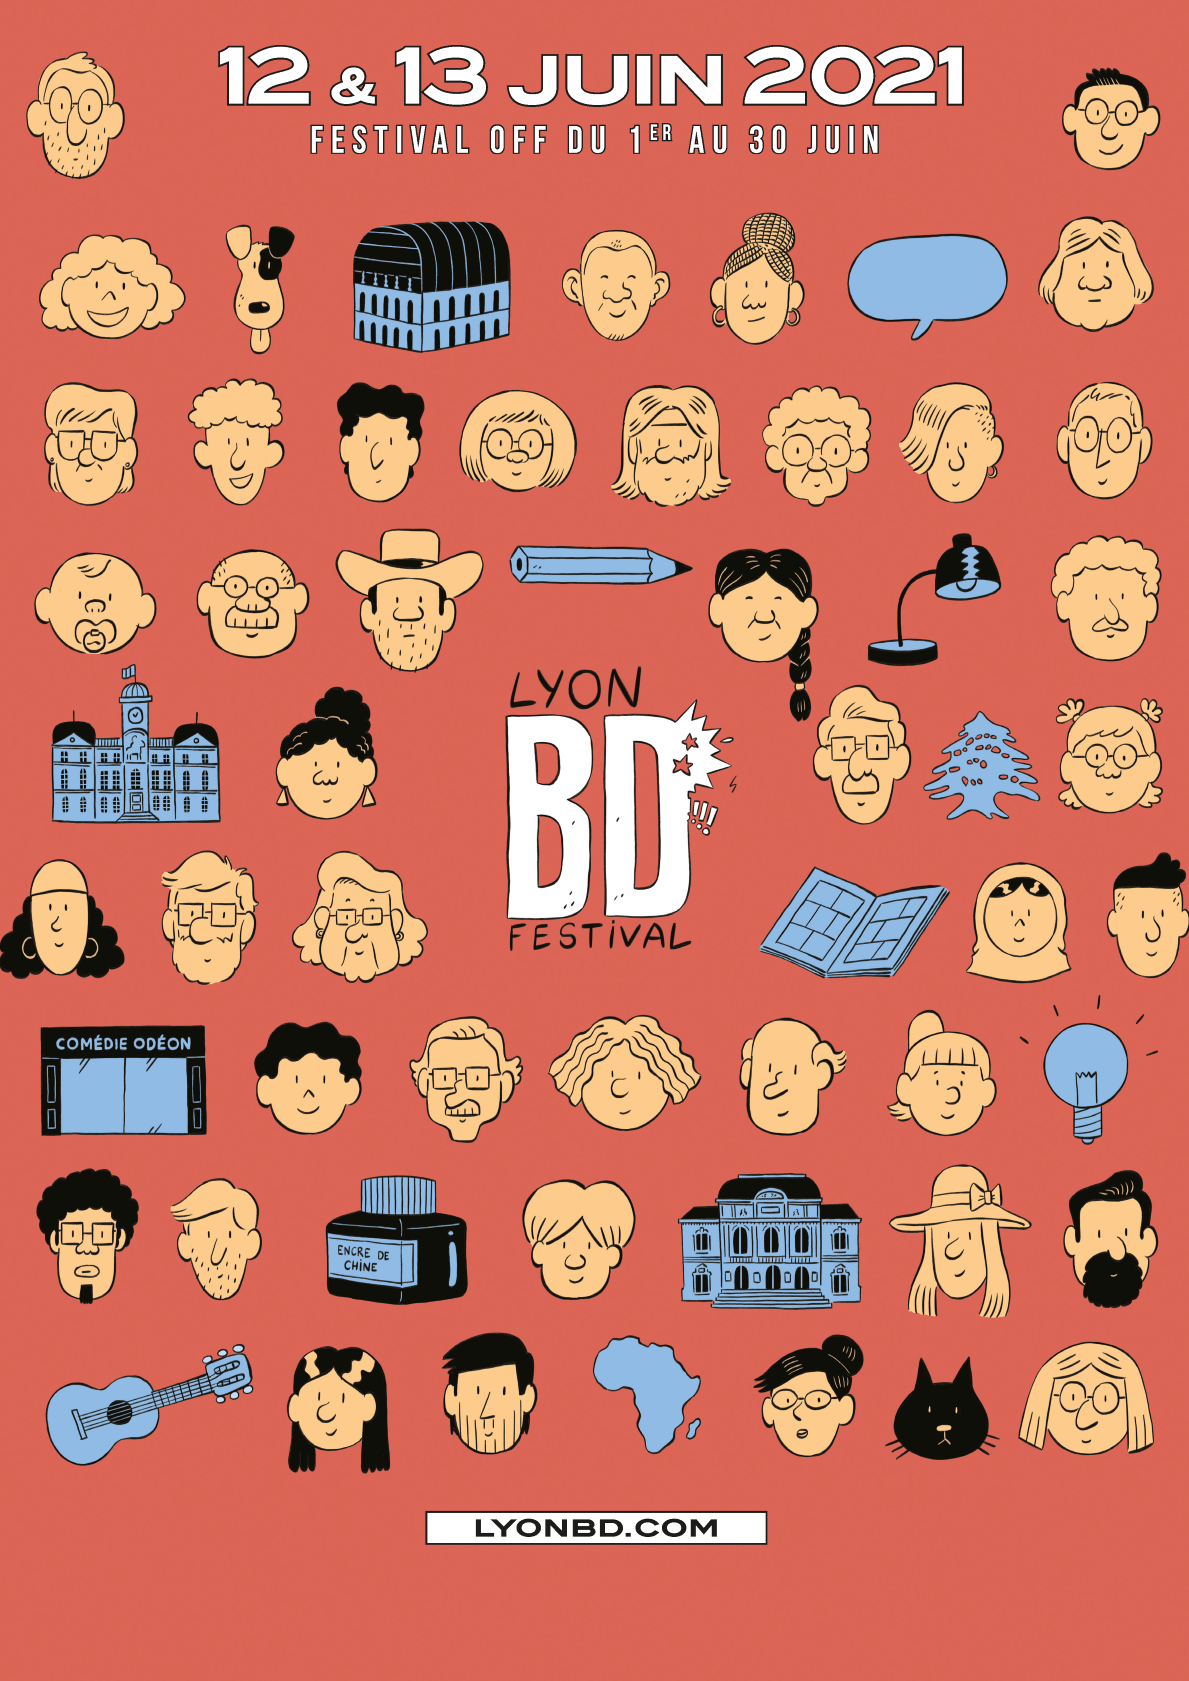 Le Lyon BD Festival aura lieu du 12 au 13 juin